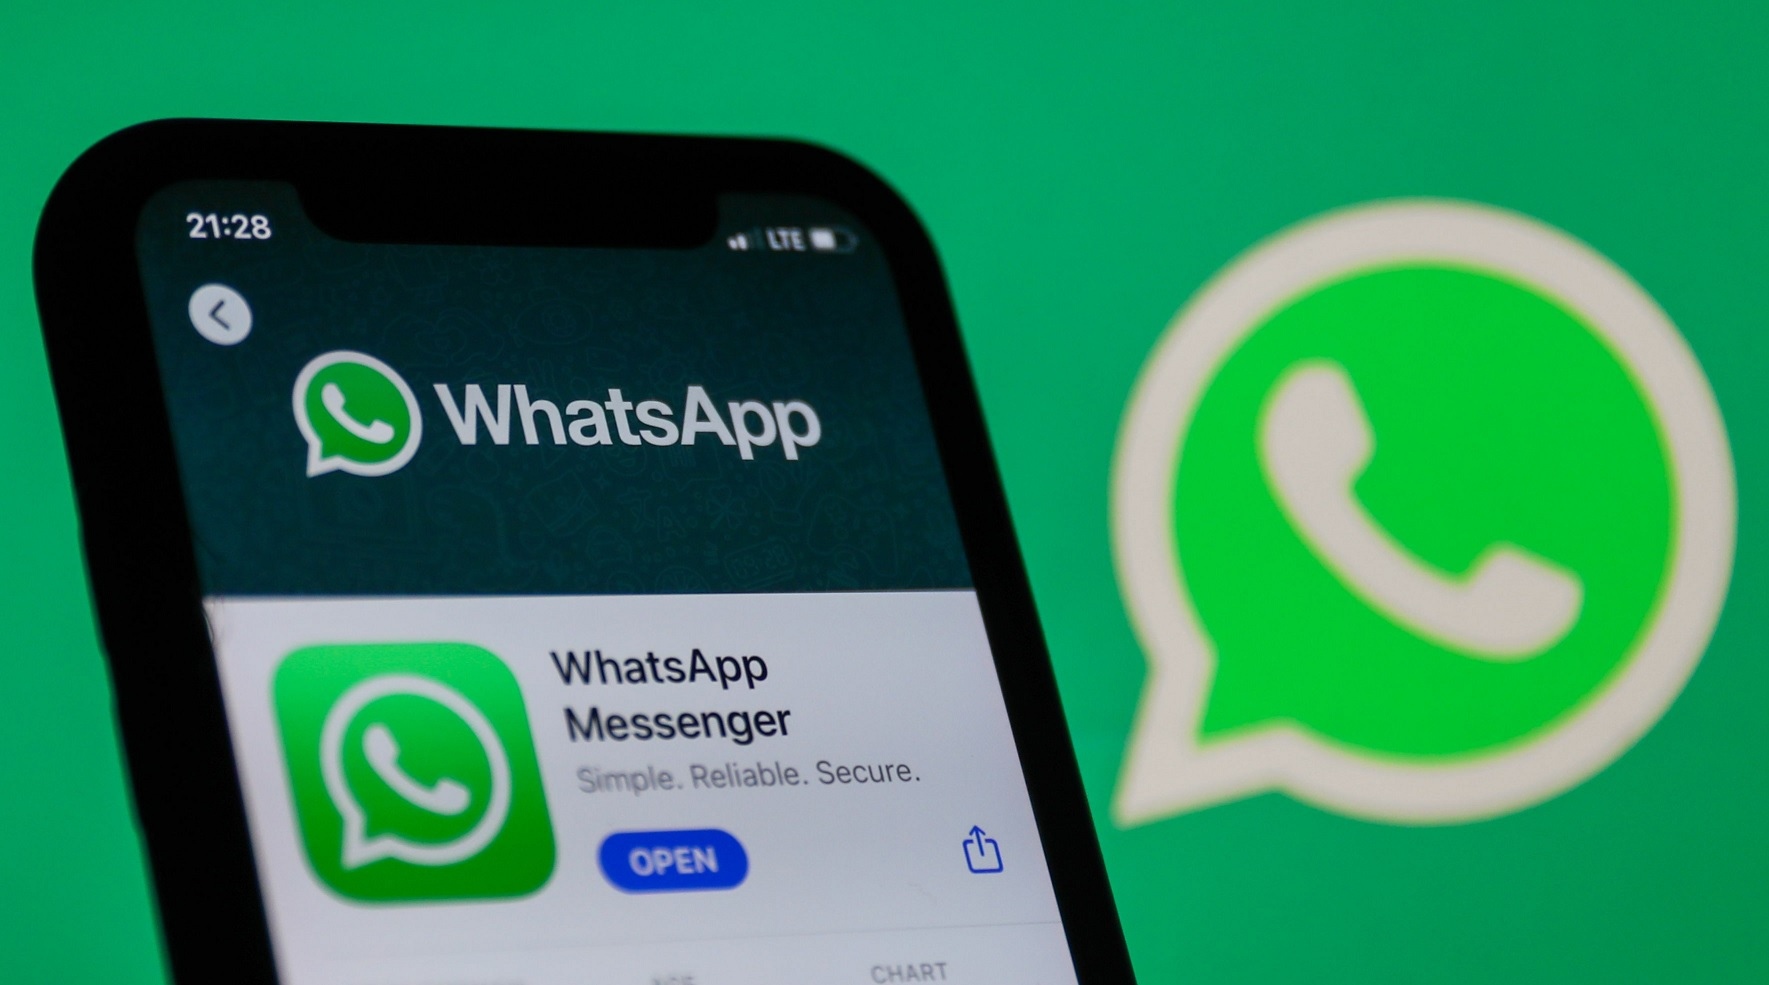 New WhatsApp update will block screenshots